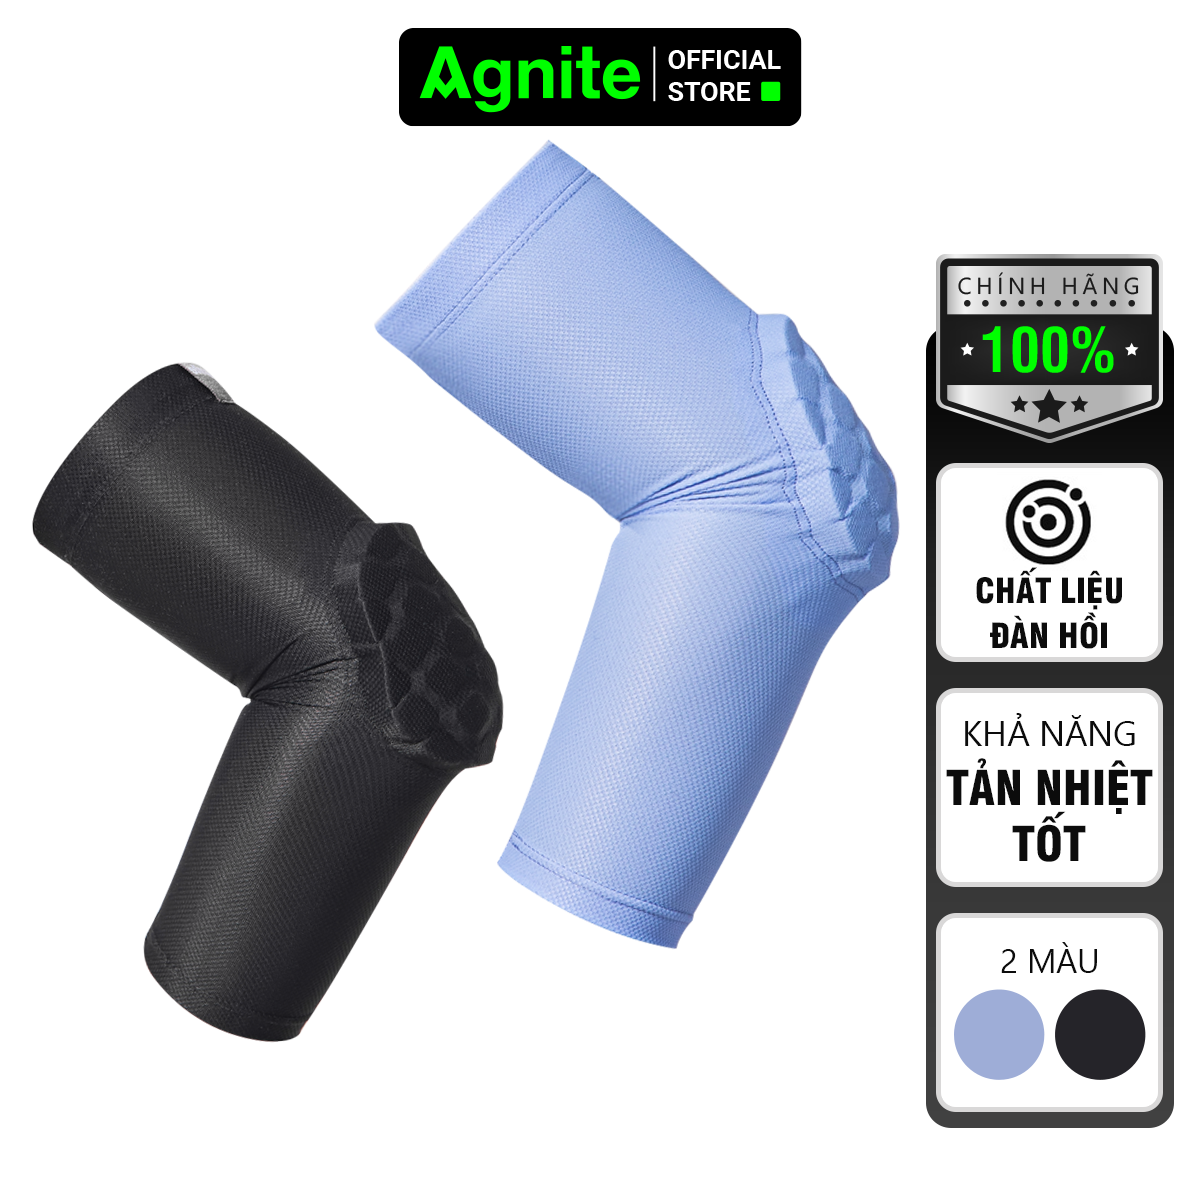 [Combo 2] Đệm khuỷu tay AGNITE chính hãng, giúp bảo vệ khuỷu tay tập luyện thể thao, tránh chấn thương -  mã FL103